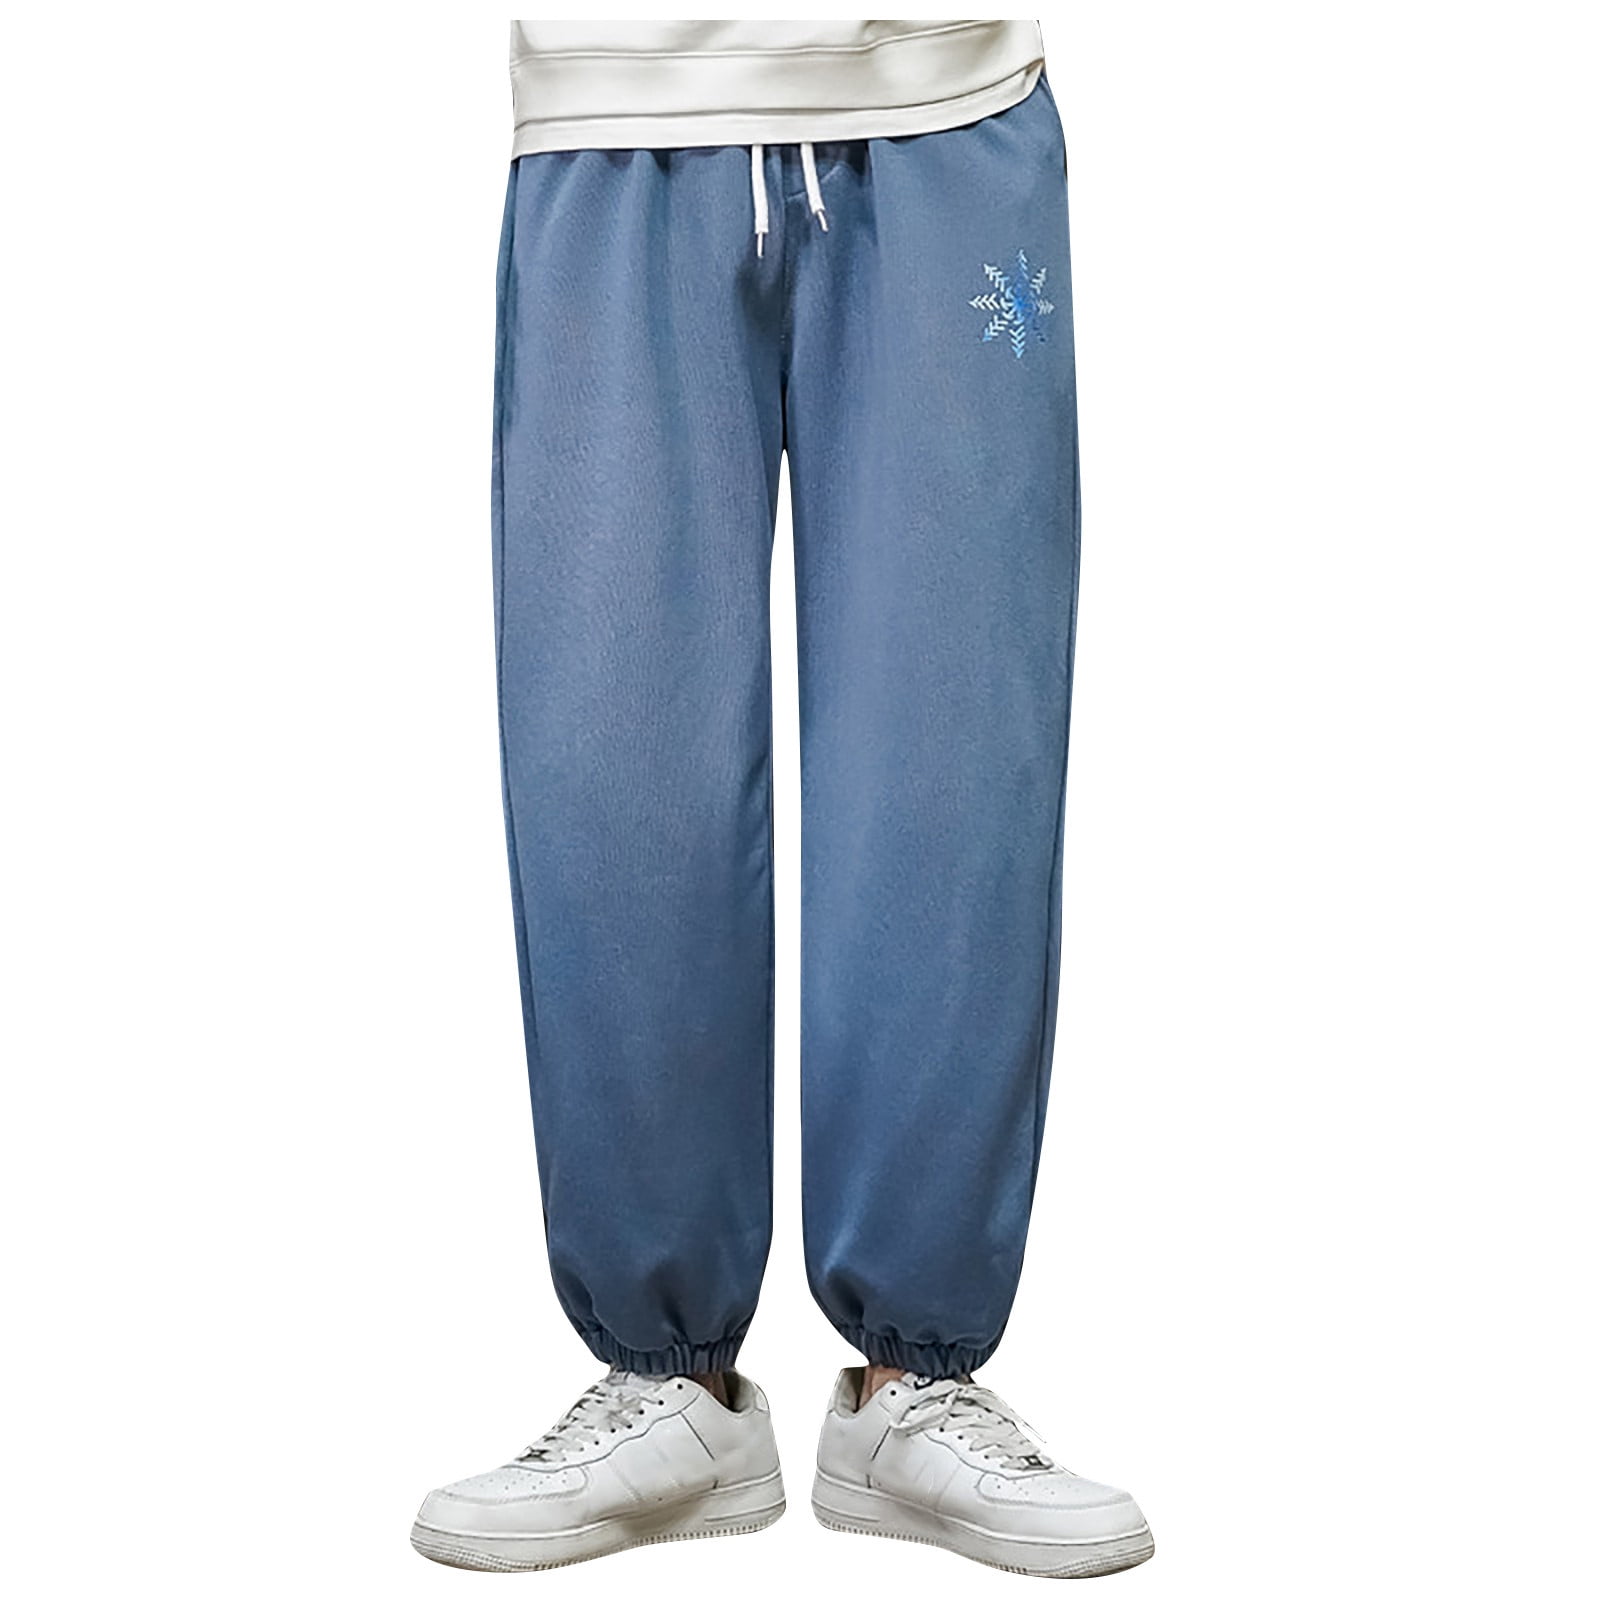 conductor Bajar Universidad Sweatpants Running Leggings Loose Plus Decorative Size Printed Men's Pants  - Walmart.com